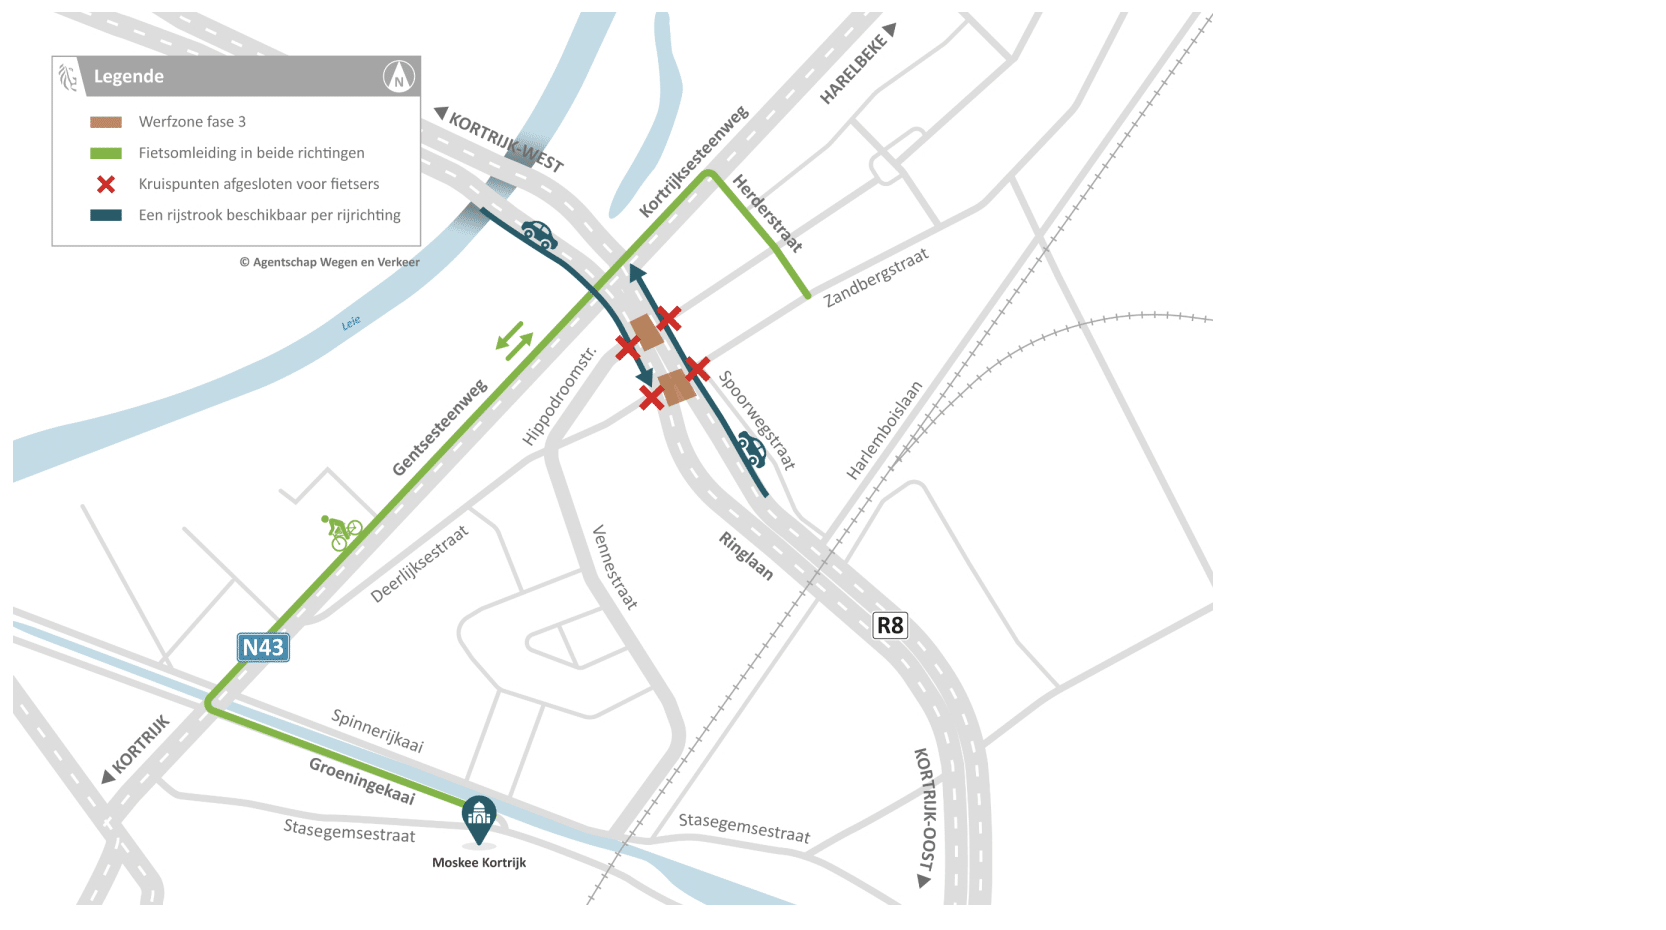 Fase 3 van werken aan kruispunt op Ringlaan (R8 en N43) Kortrijk en Harelbeke start vanaf 20 juni: fietsomleiding via Gentse- en Kortrijksesteenweg